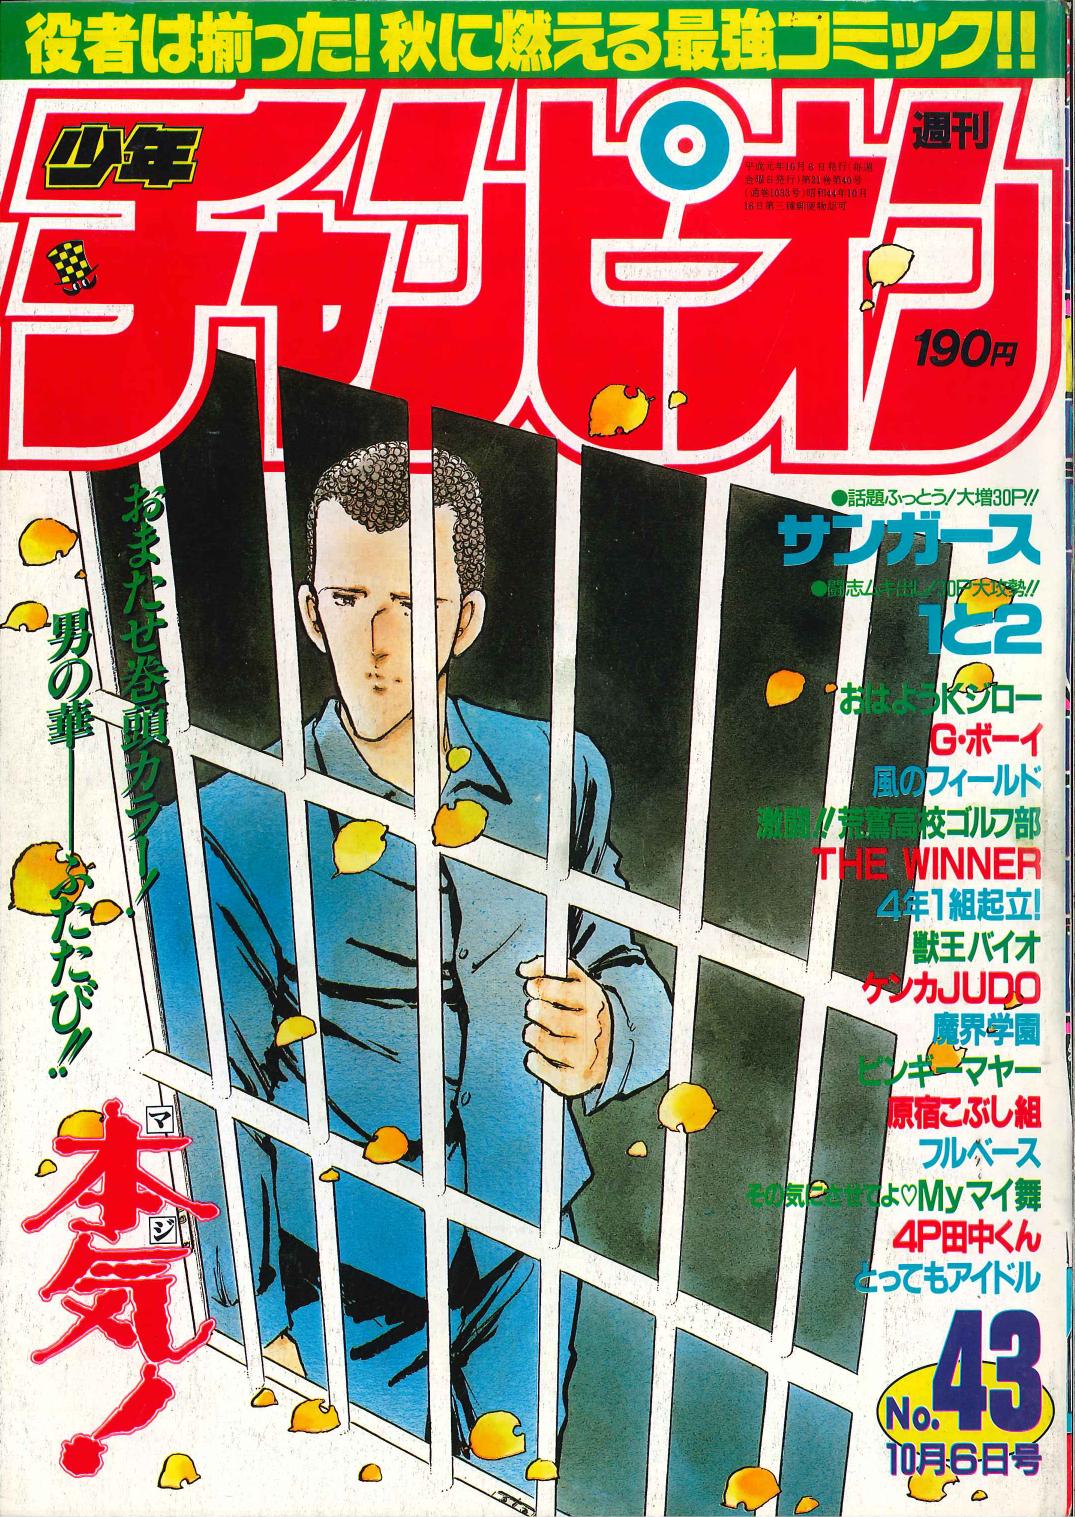 秋田書店 1989年(平成1年)の漫画雑誌 『週刊少年チャンピオン1989年 